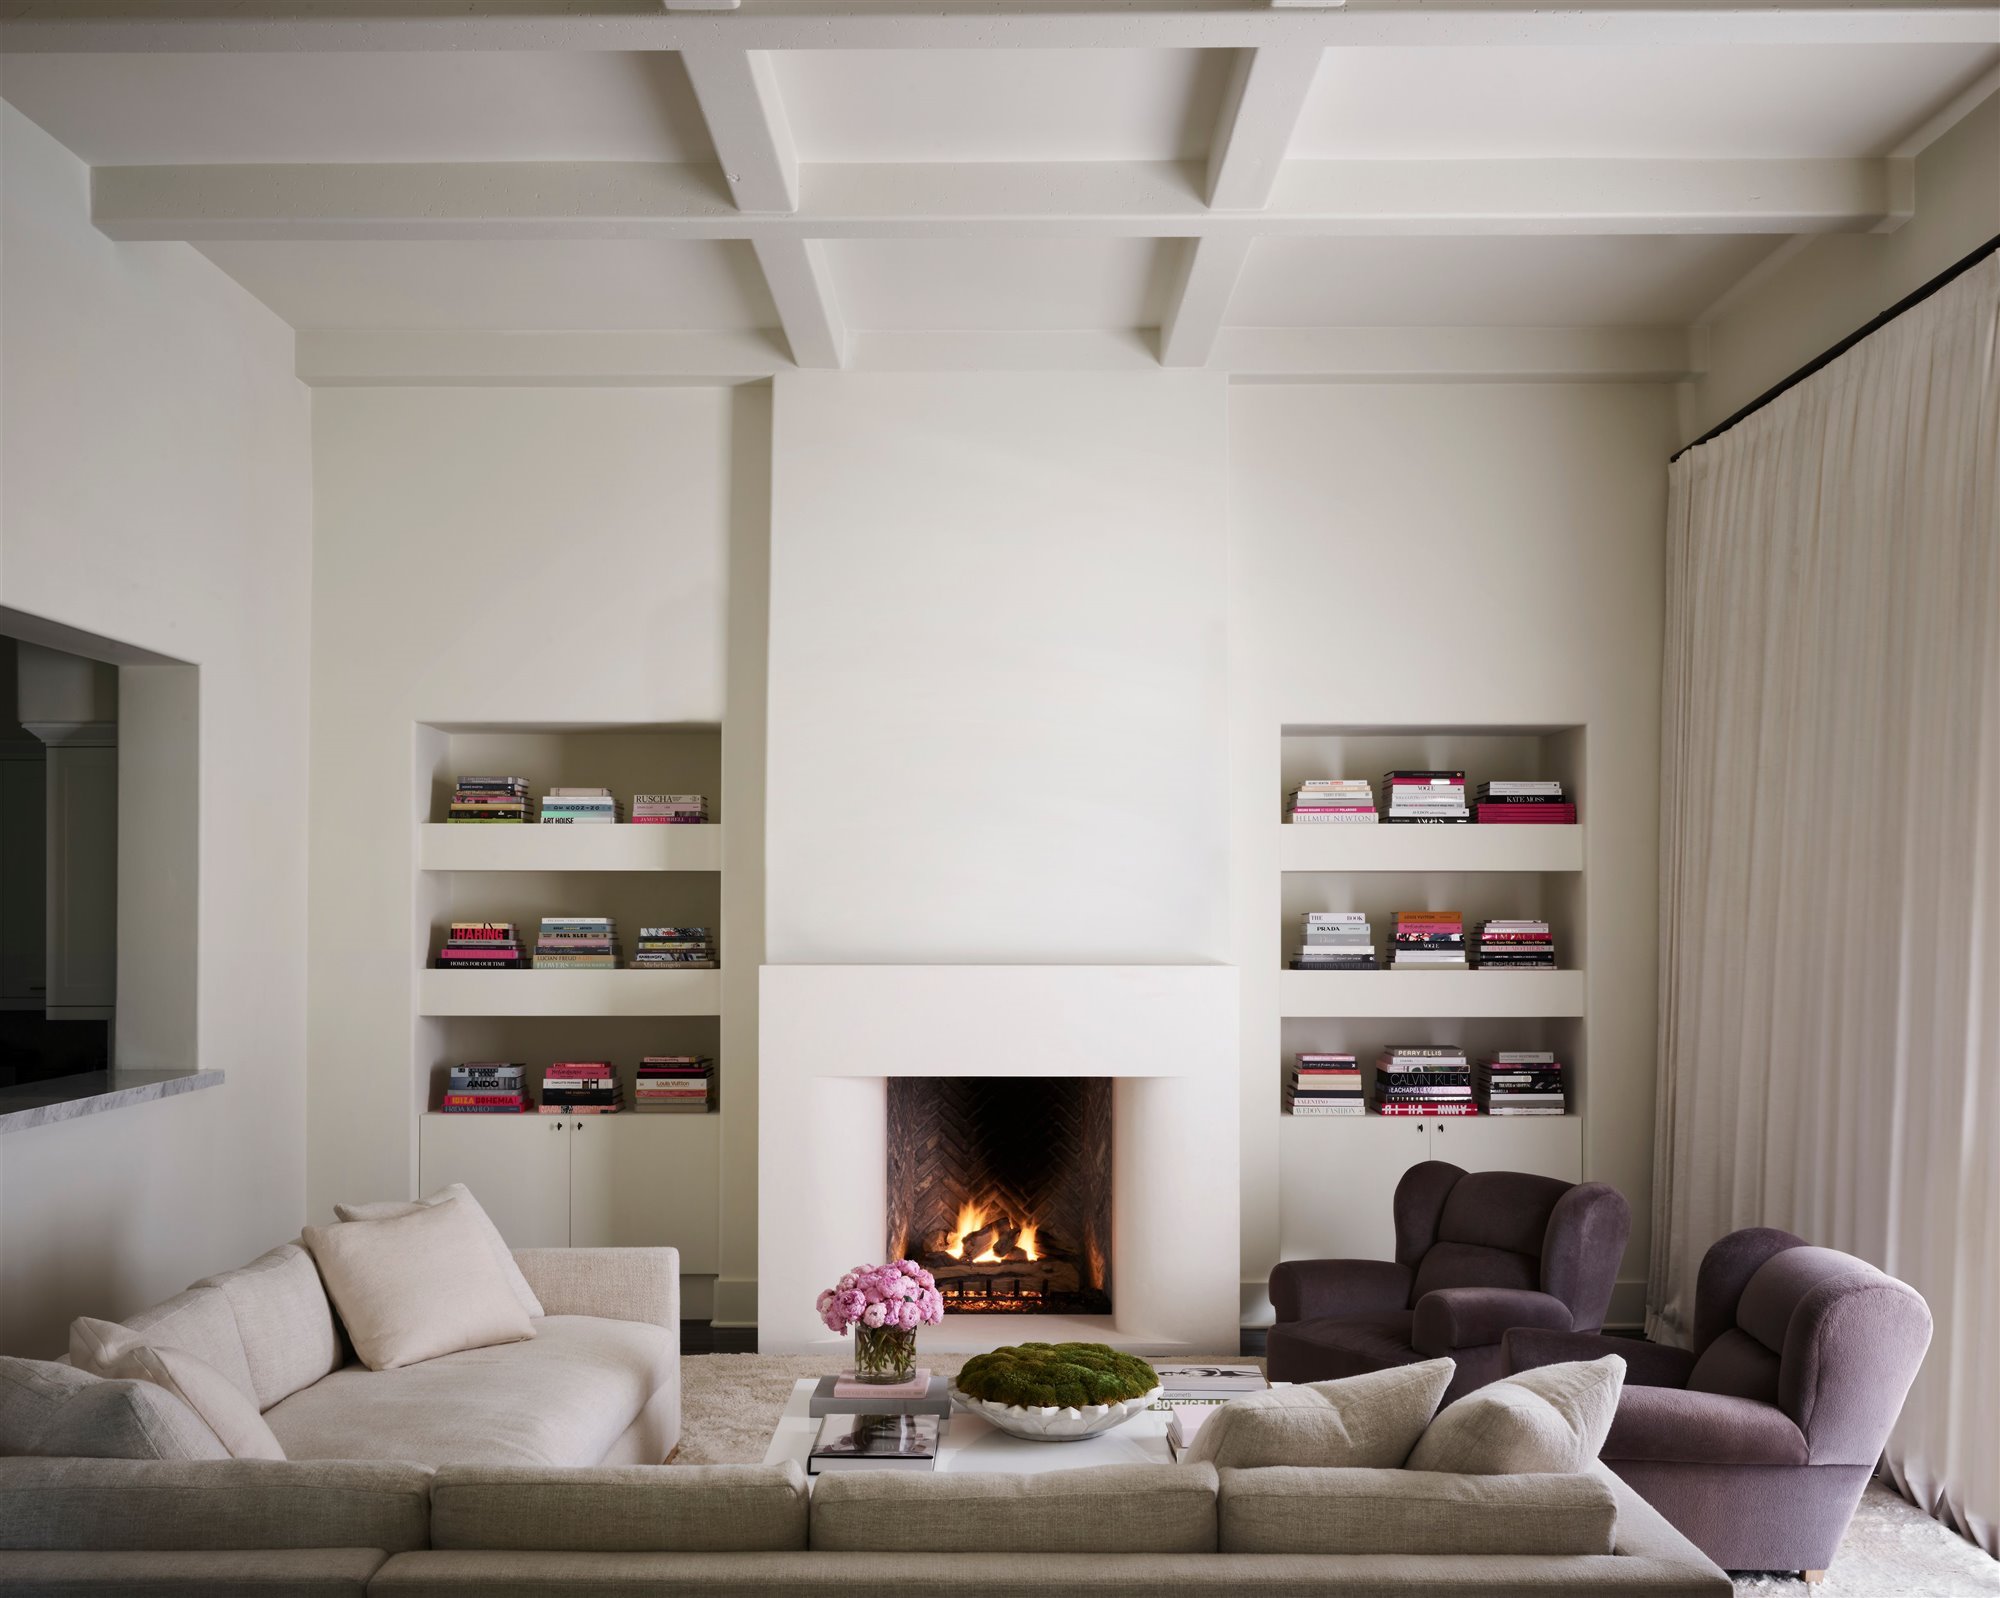 Salon con chimenea y techo con vigas de color blanco sillones lilas y sofa blanco de la casa Kourtney Kardashian en Calabasas